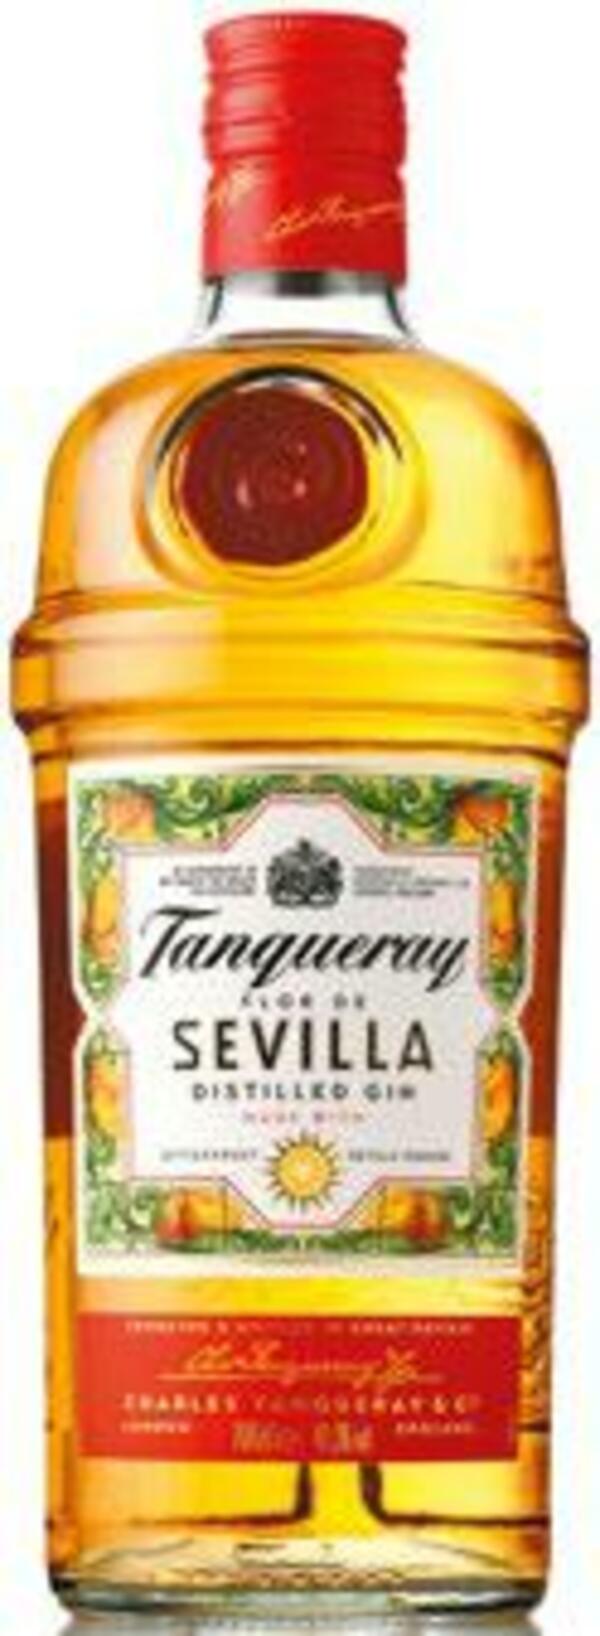 Bild 1 von Tanqueray London Dry Gin oder Sevilla